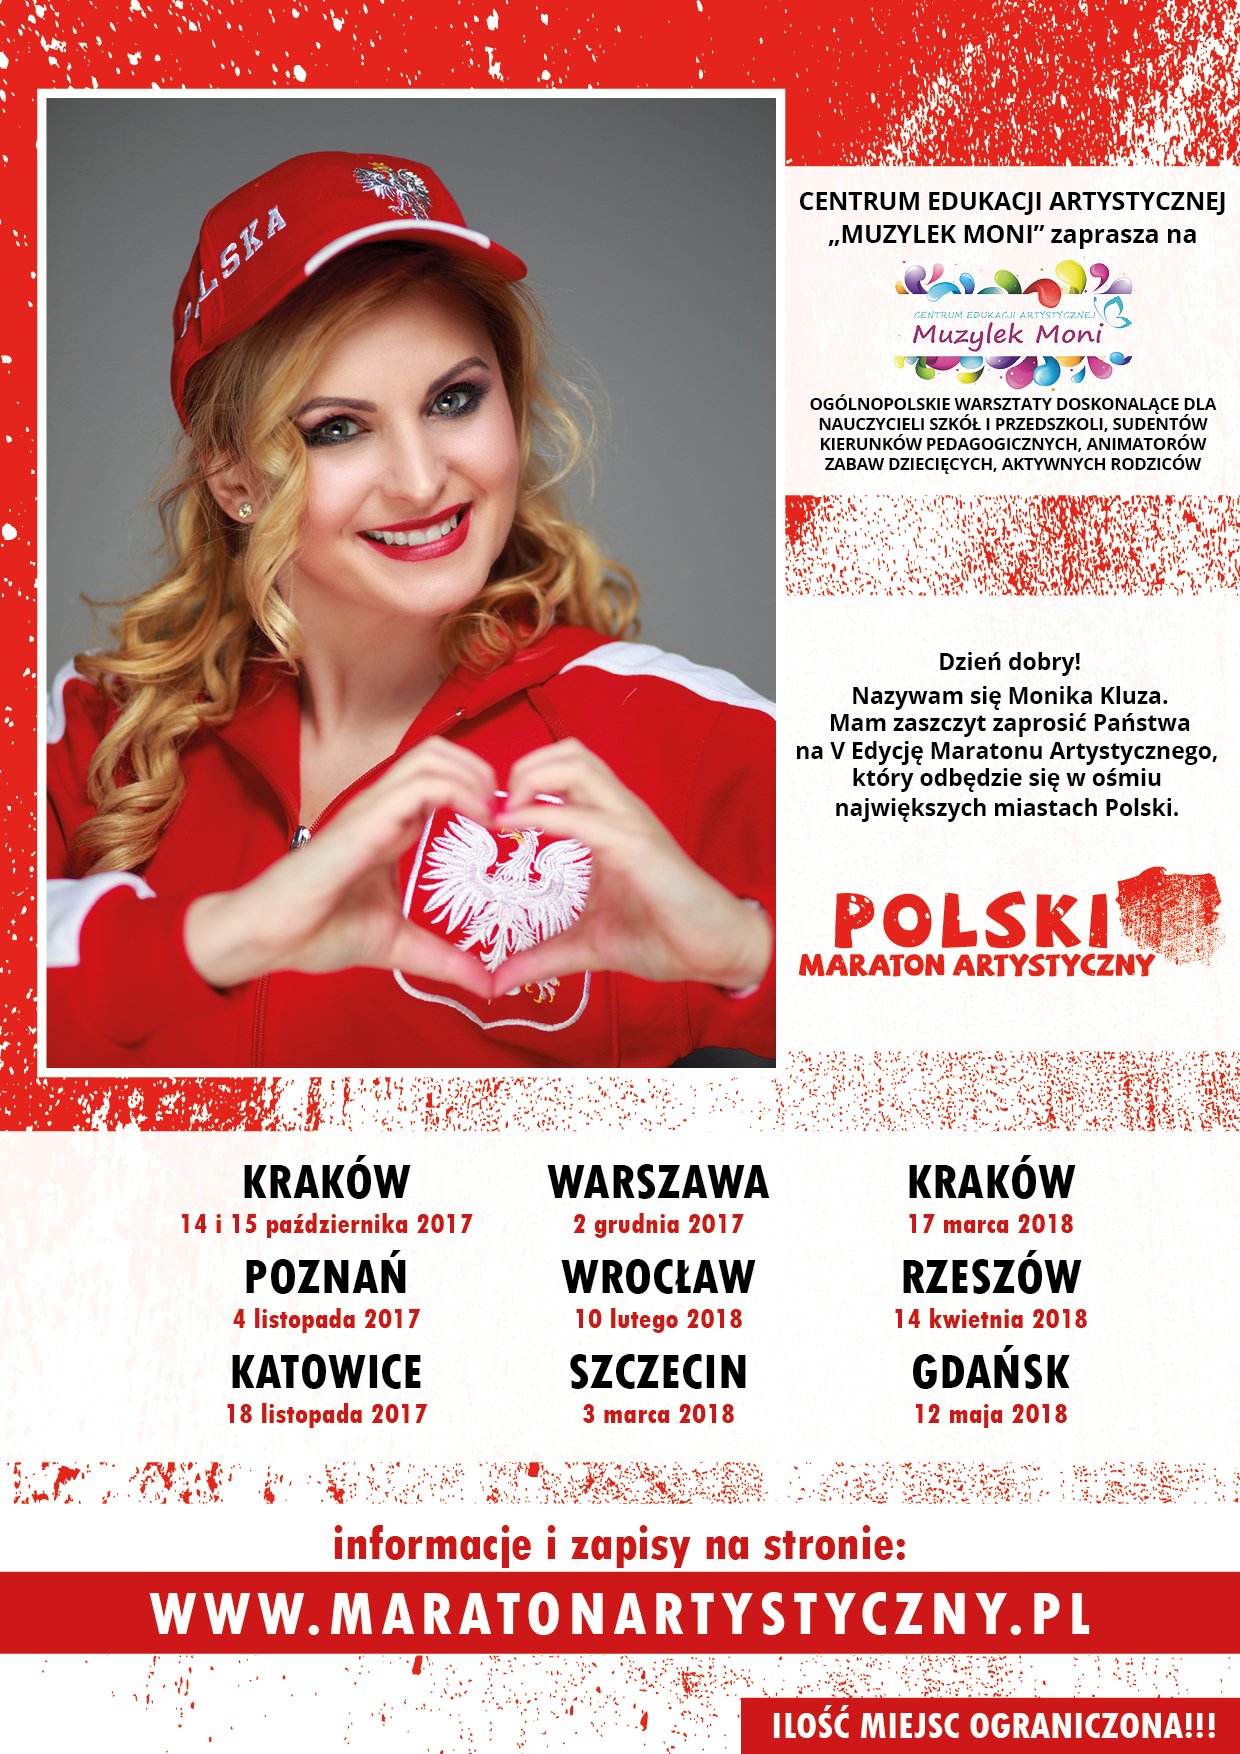 5 edycja ogólnopolskiego projektu doskonalącego dla nauczycieli szkół i przedszkoli – Polski Maraton Artystyczny